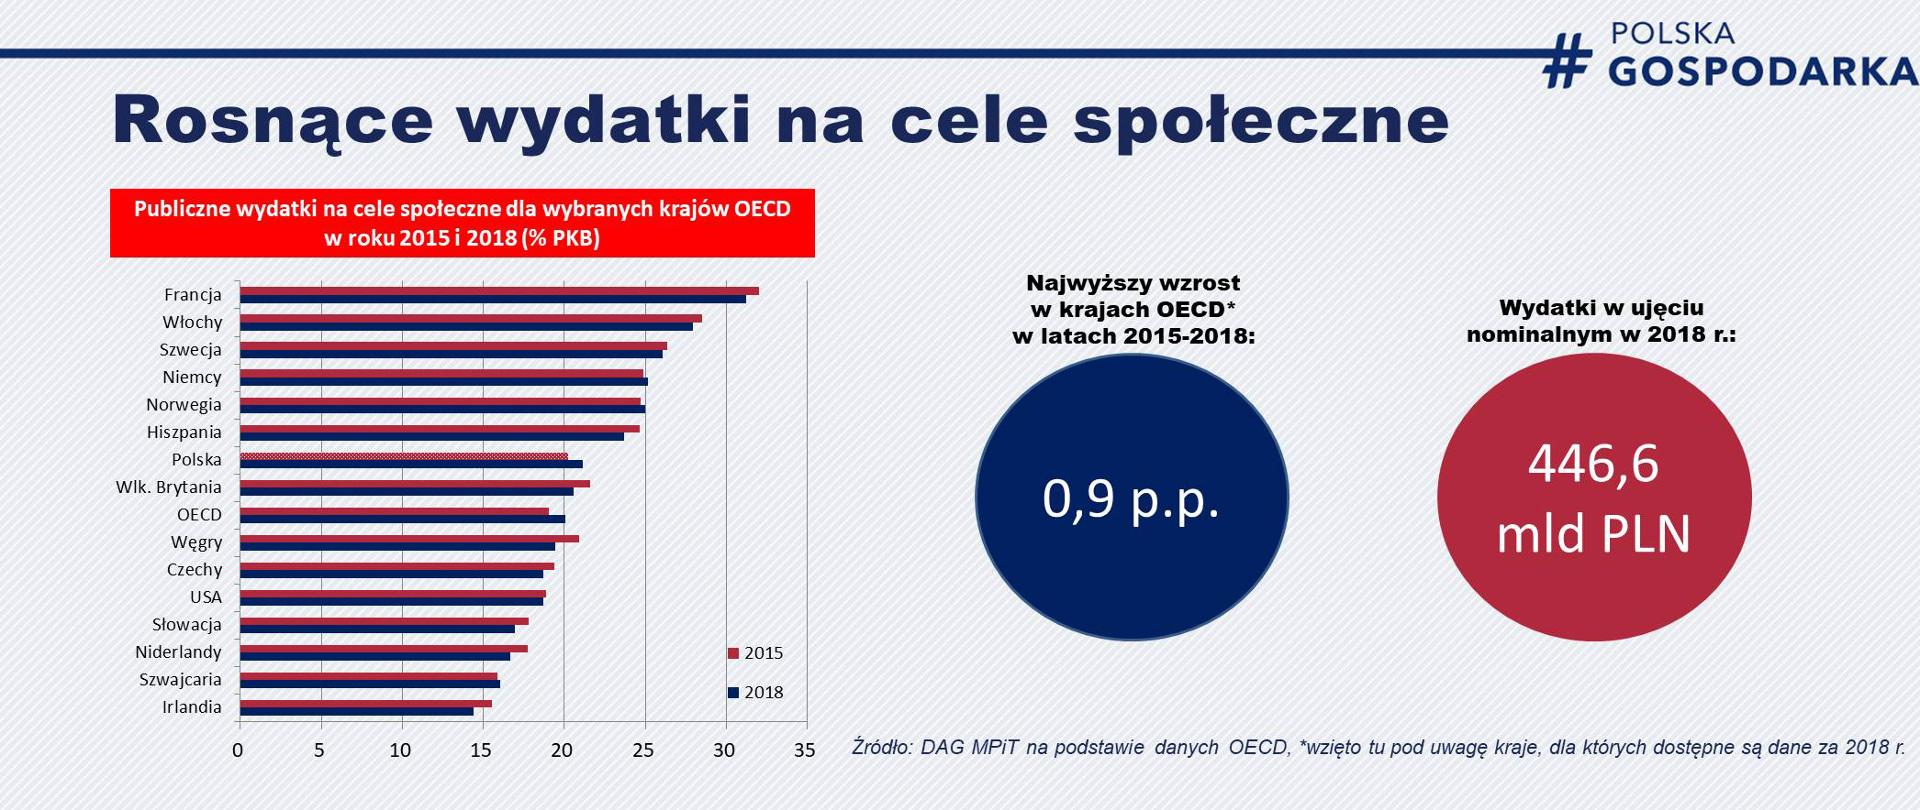 Wykres pokazujący wzrost wydatków społecznych Polski w latach 2015-2018 na tle innych państw Zachodu